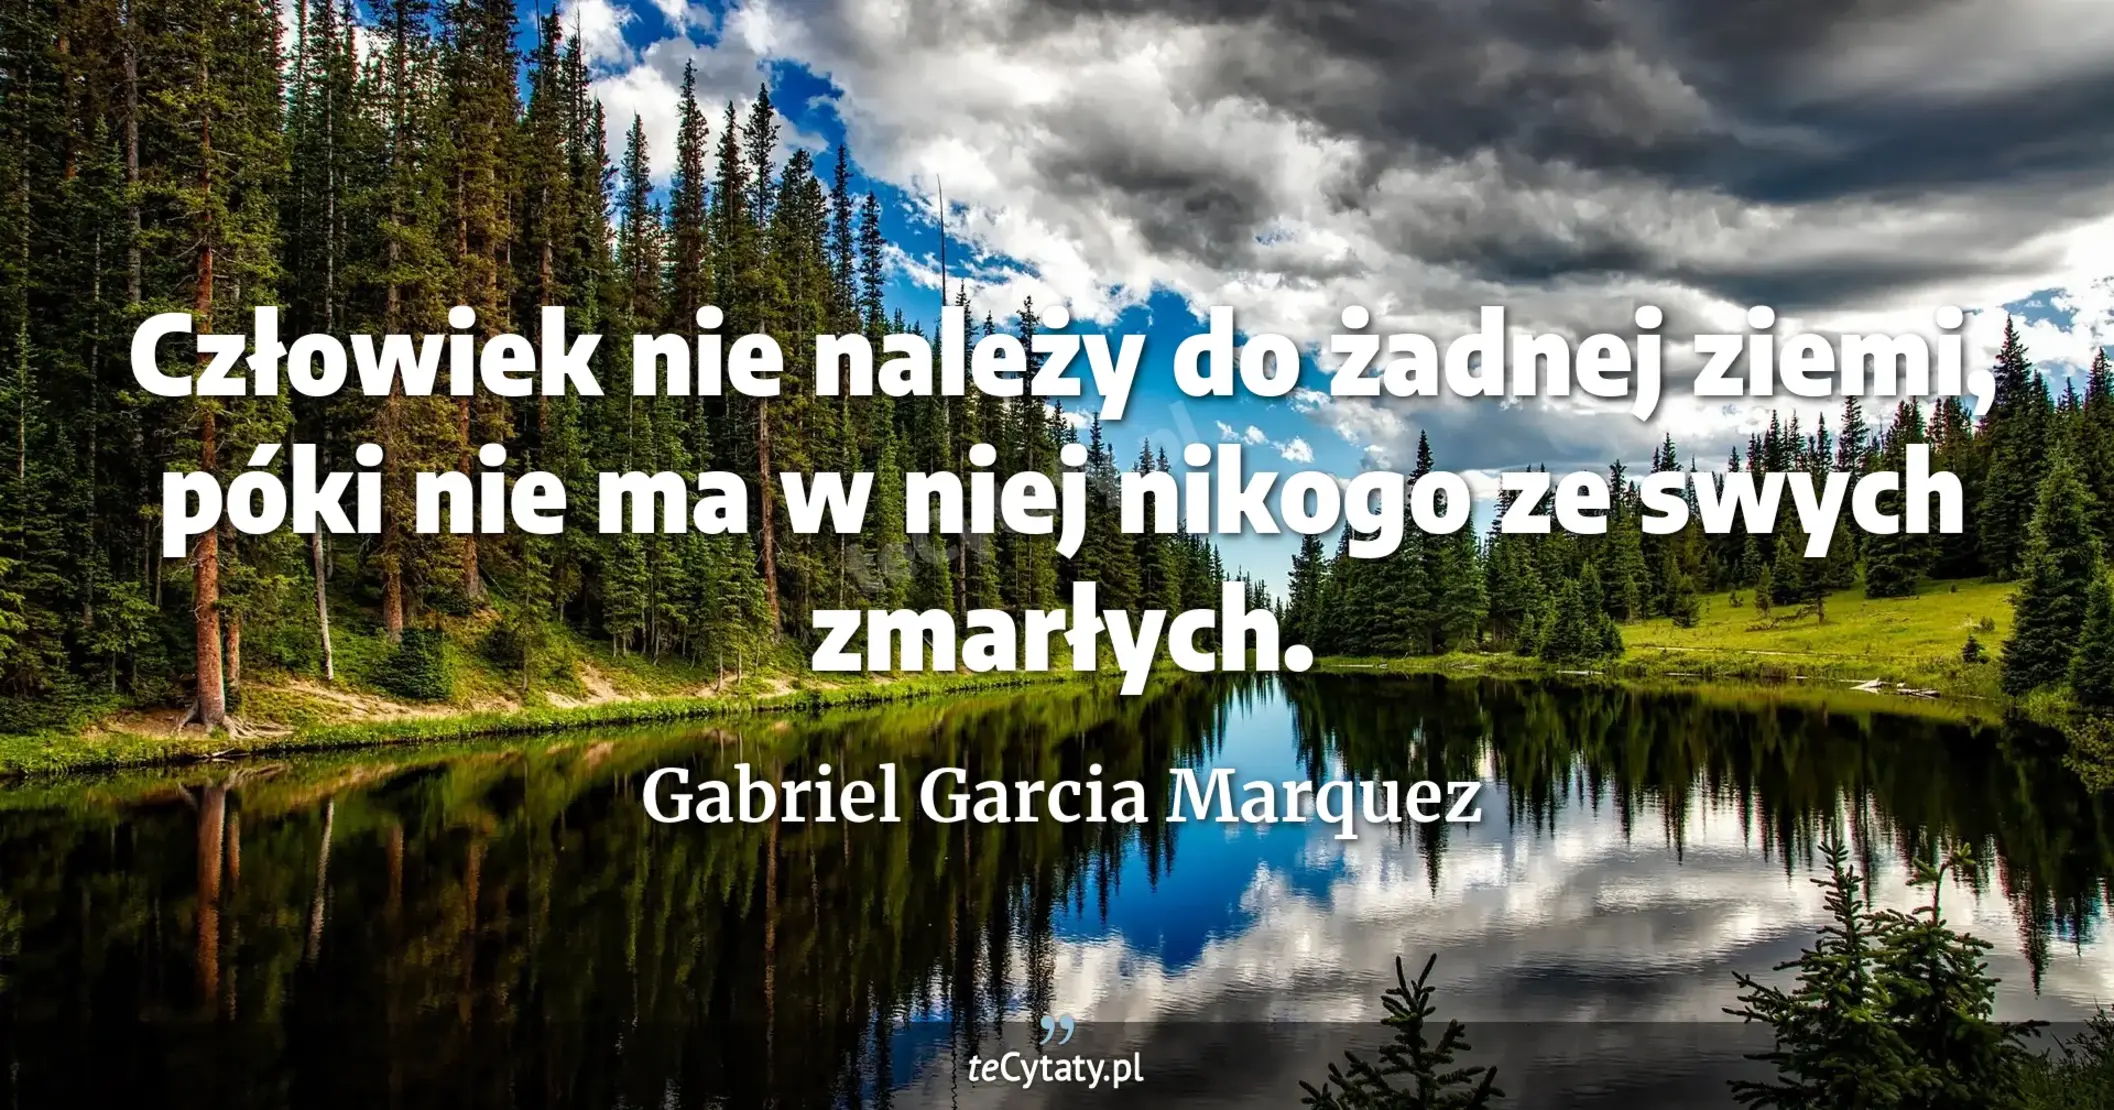 Człowiek nie należy do żadnej ziemi, póki nie ma w niej nikogo ze swych zmarłych. - Gabriel Garcia Marquez